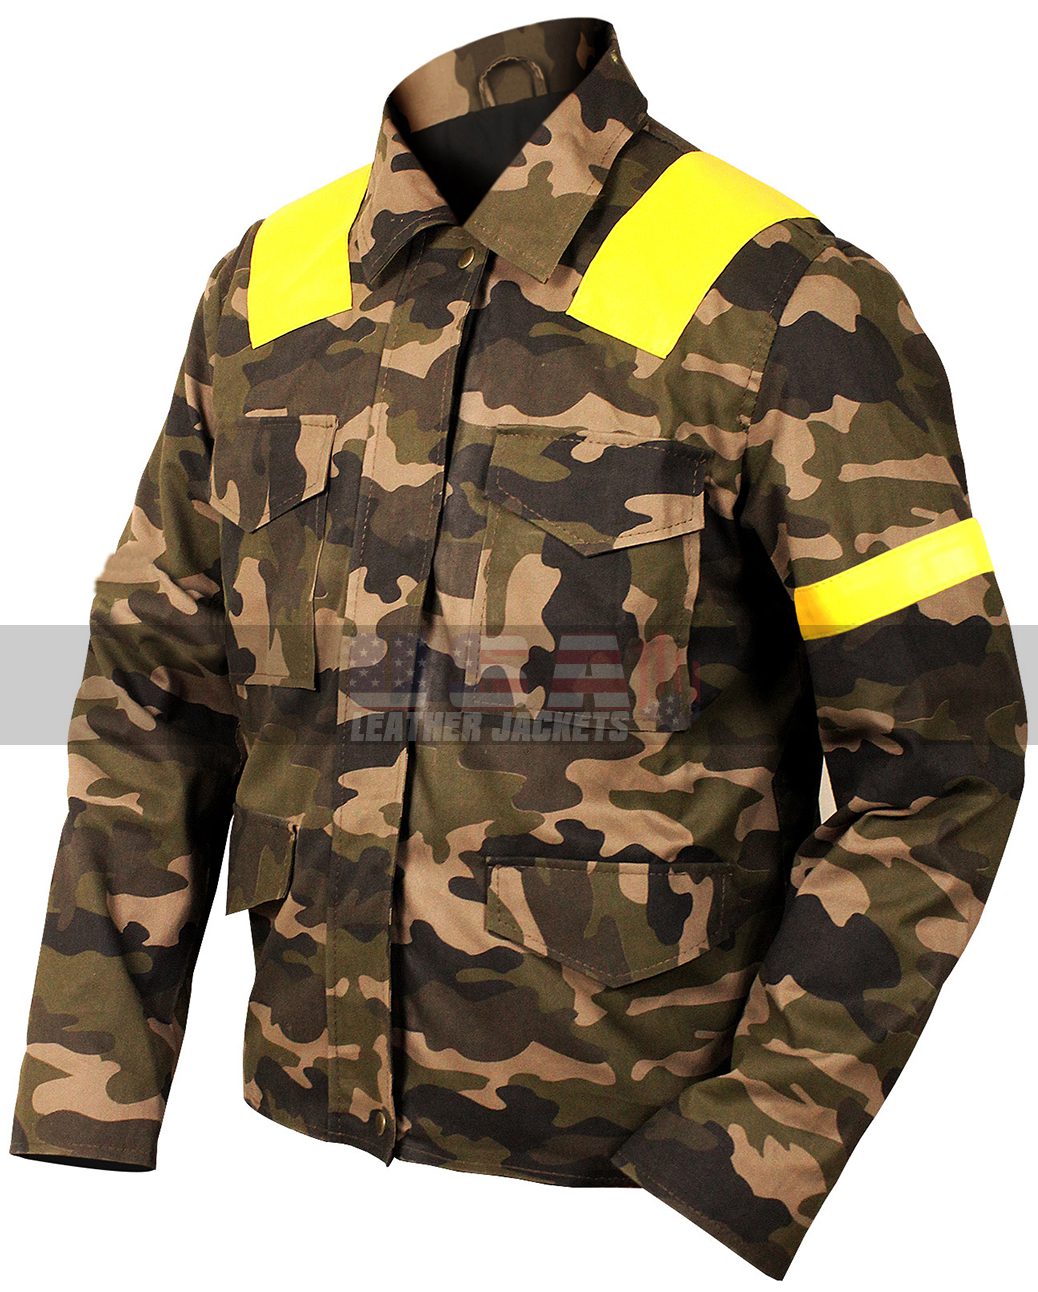 21 Twenty One Pilots Tyler Joseph Levitate Trench Camouflage Jacket